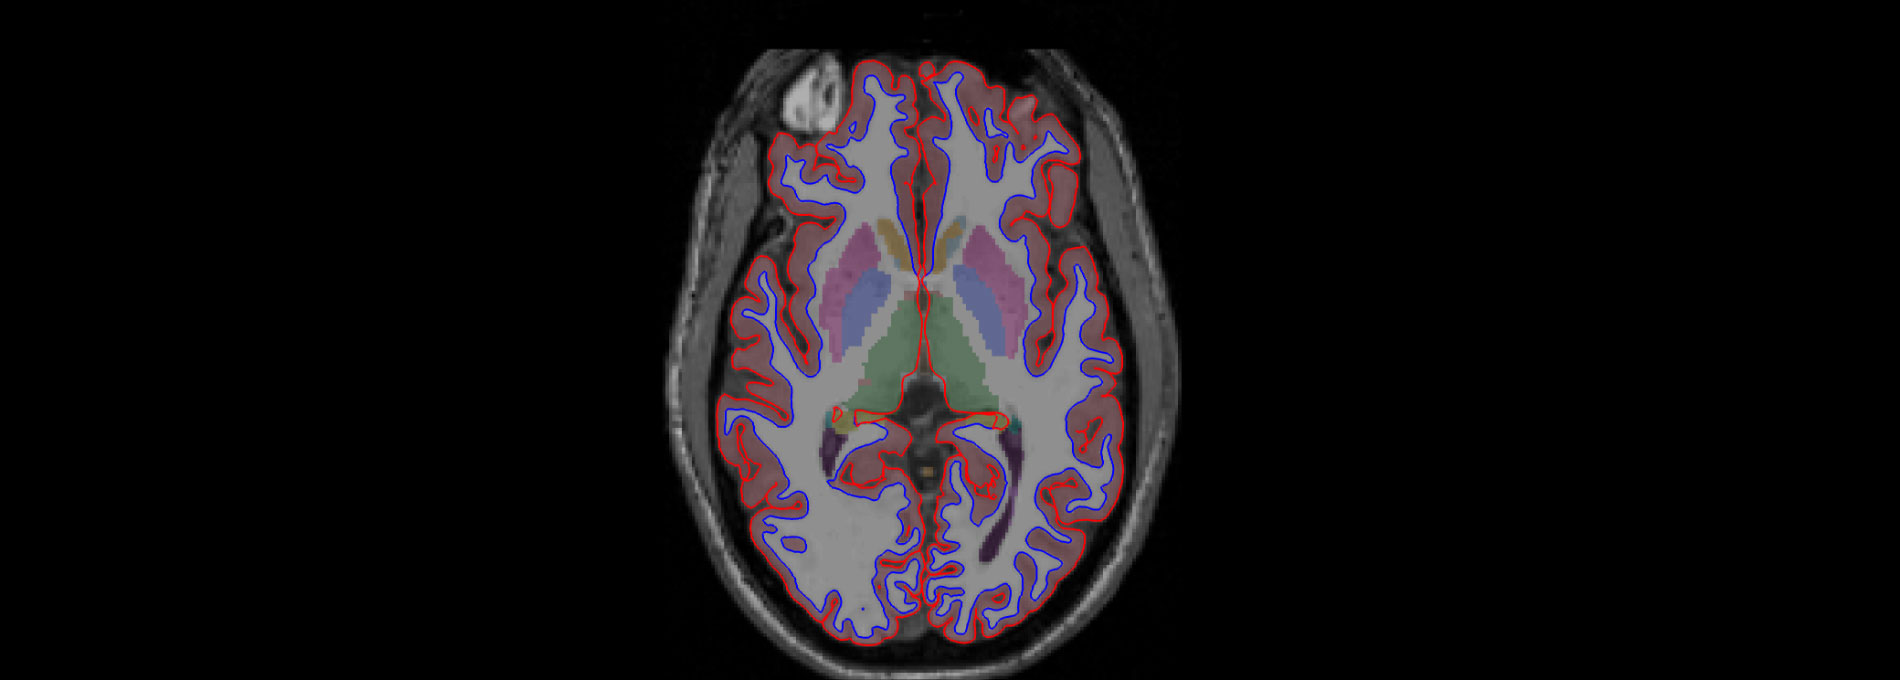 CNS brain scan